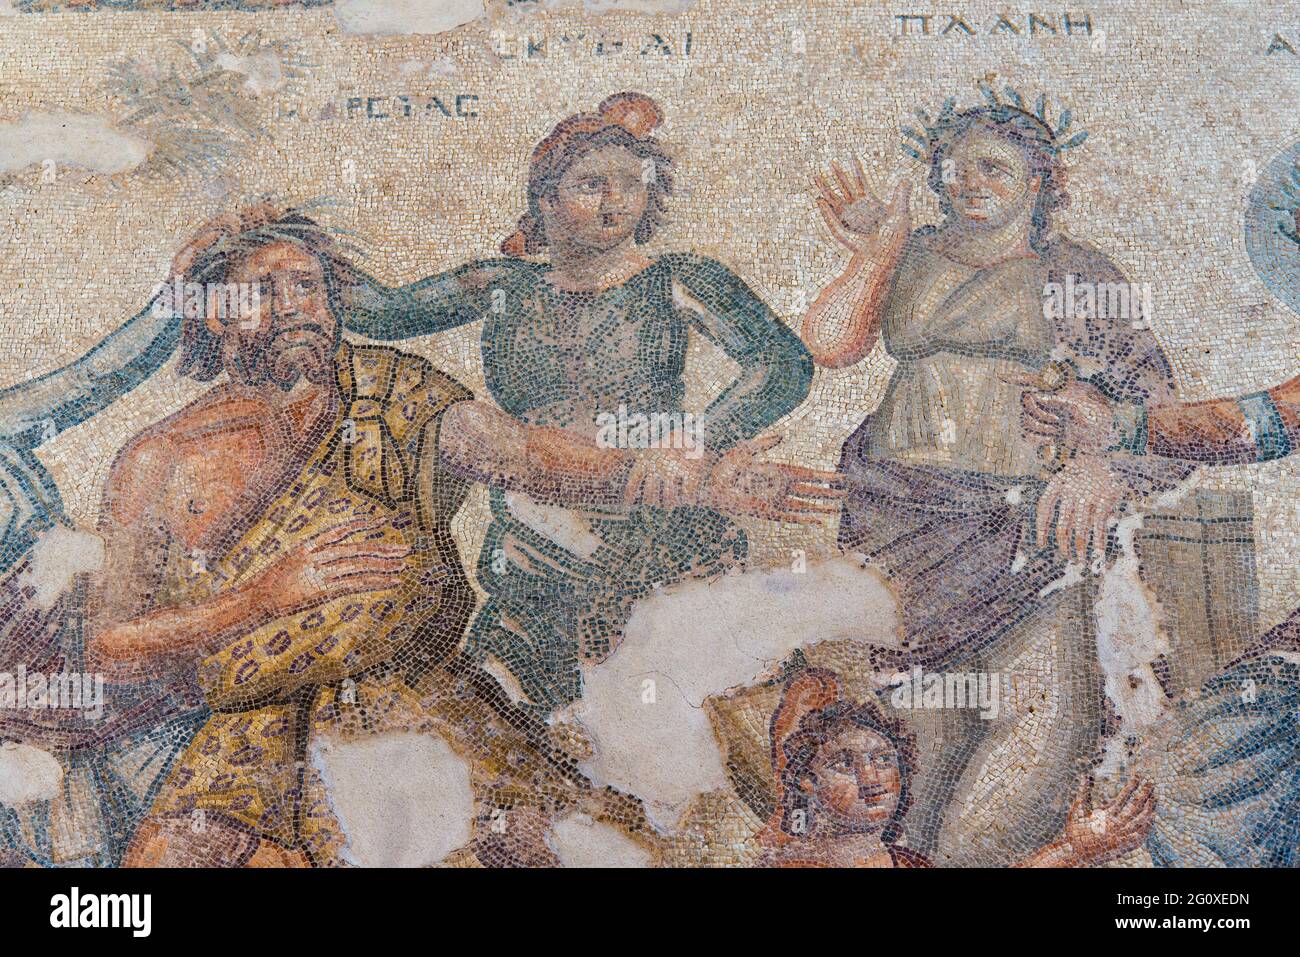 Apollo und Marsyas auf einem Mosaik im Archäologischen Park von Paphos. - Apollo and Marsyas on a mosaic in Paphos Archeological Park. Stock Photo